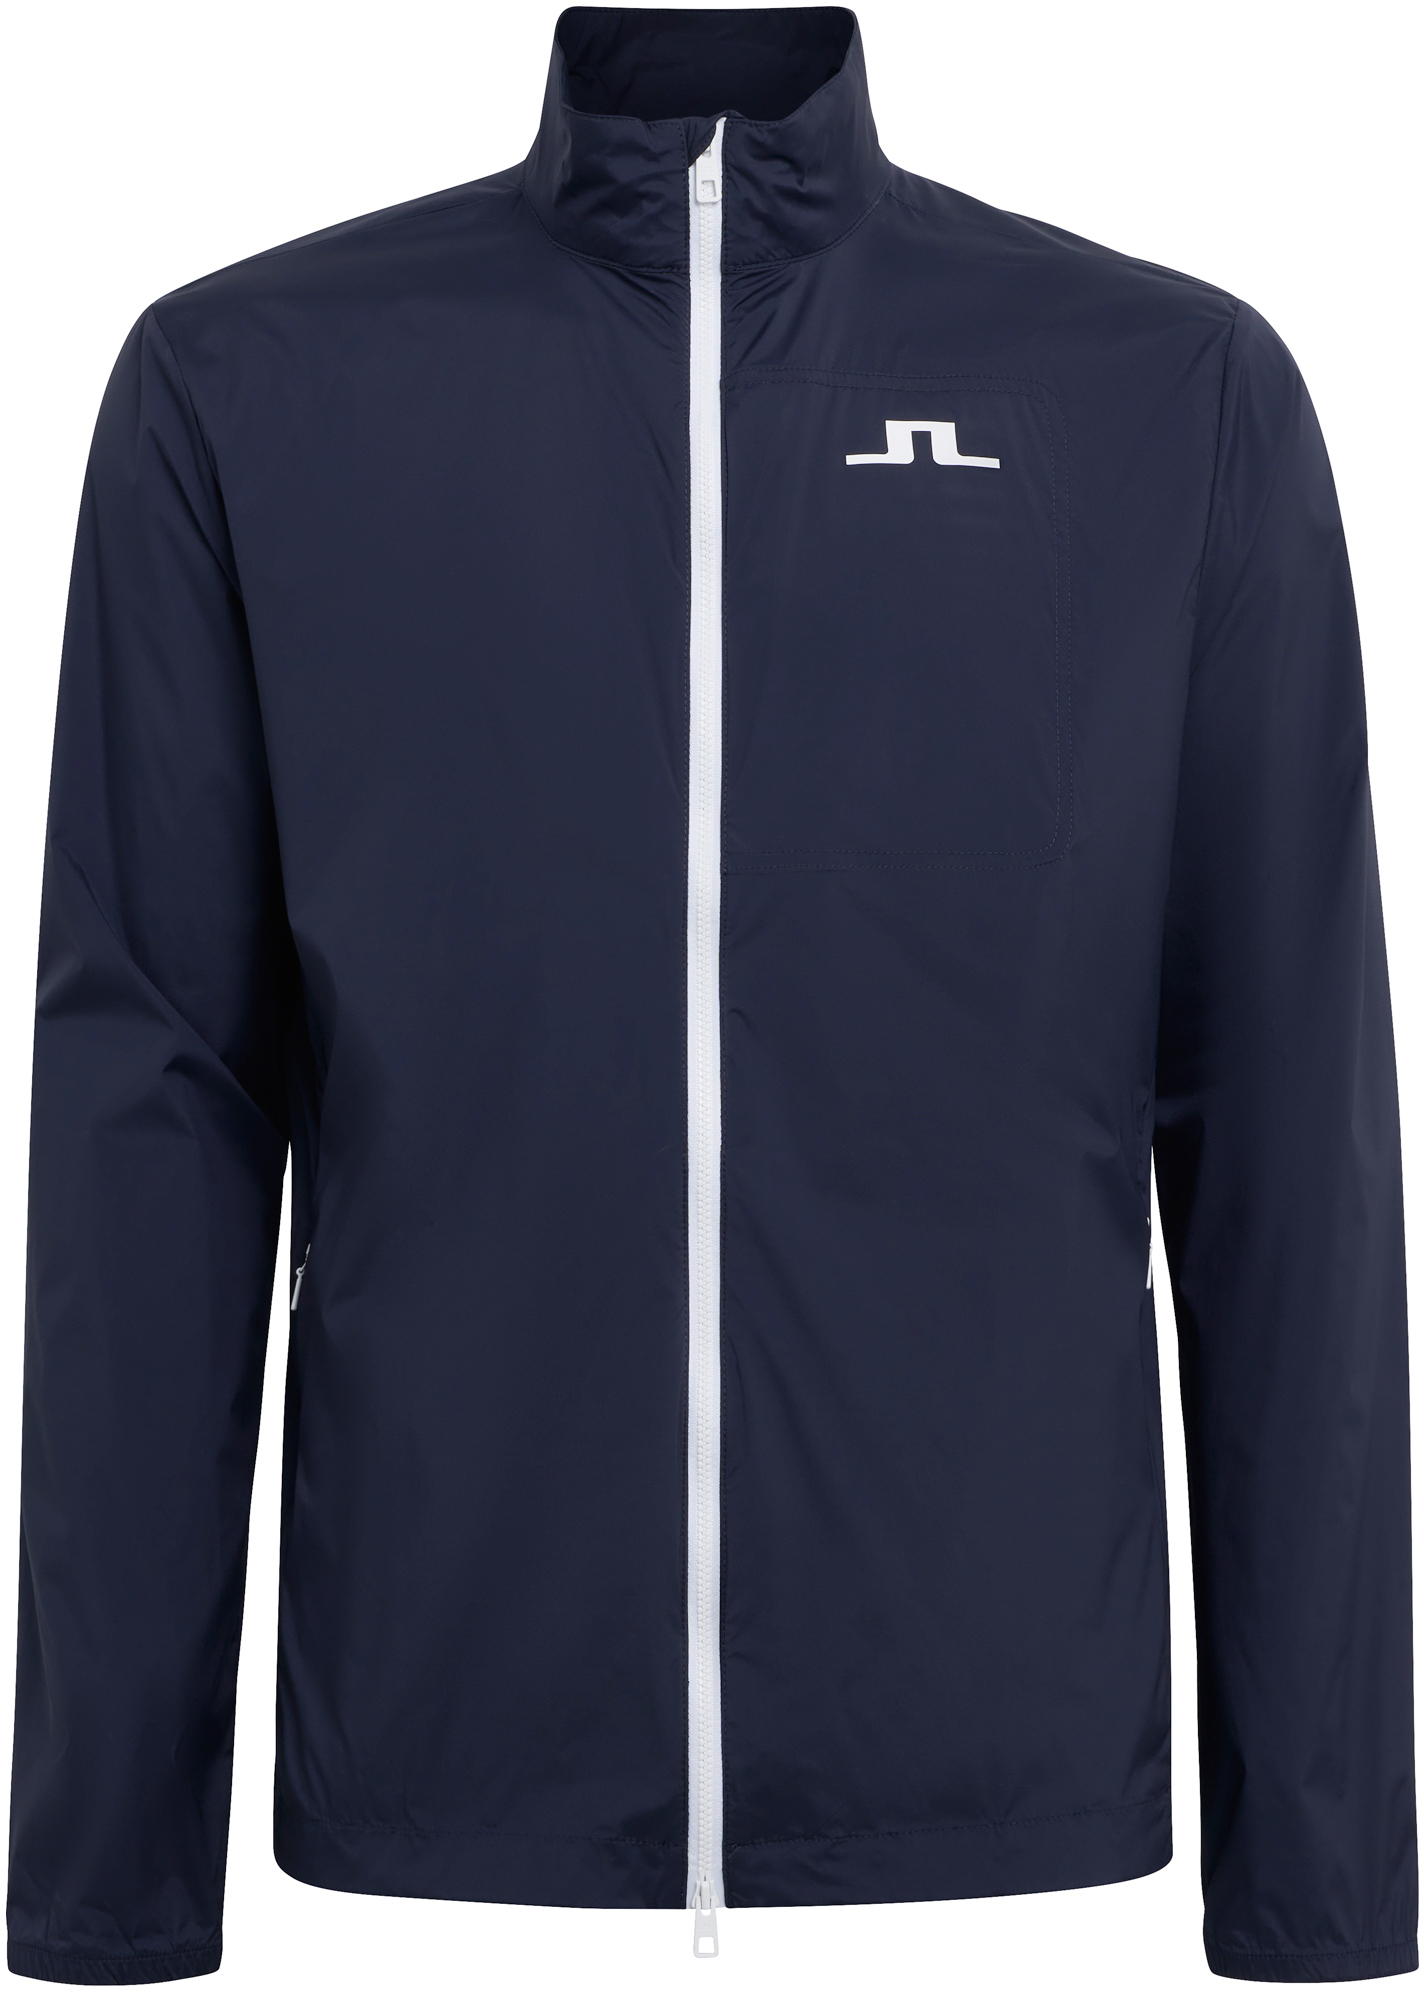 J.Lindeberg Ash Light Packable Golf Jacke, navy